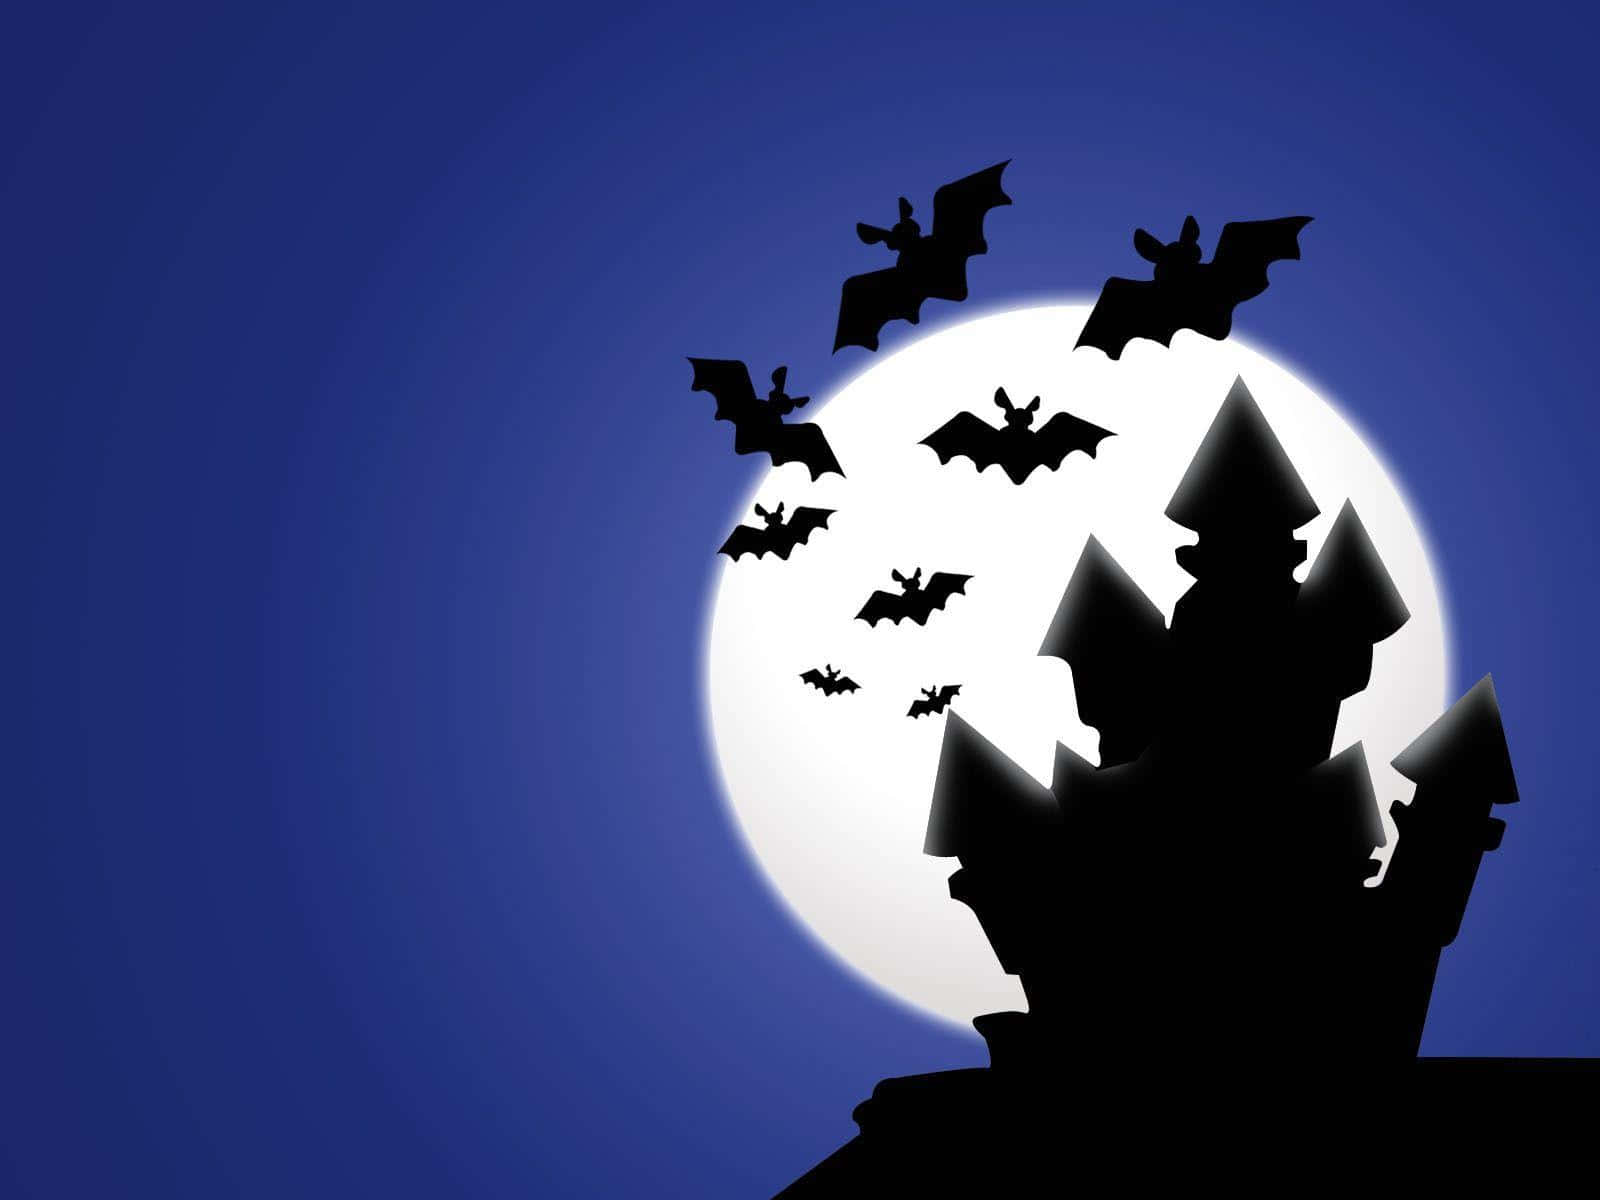 Imagende Murciélagos De Dibujos Animados Volando Sobre Una Casa Embrujada En Halloween.